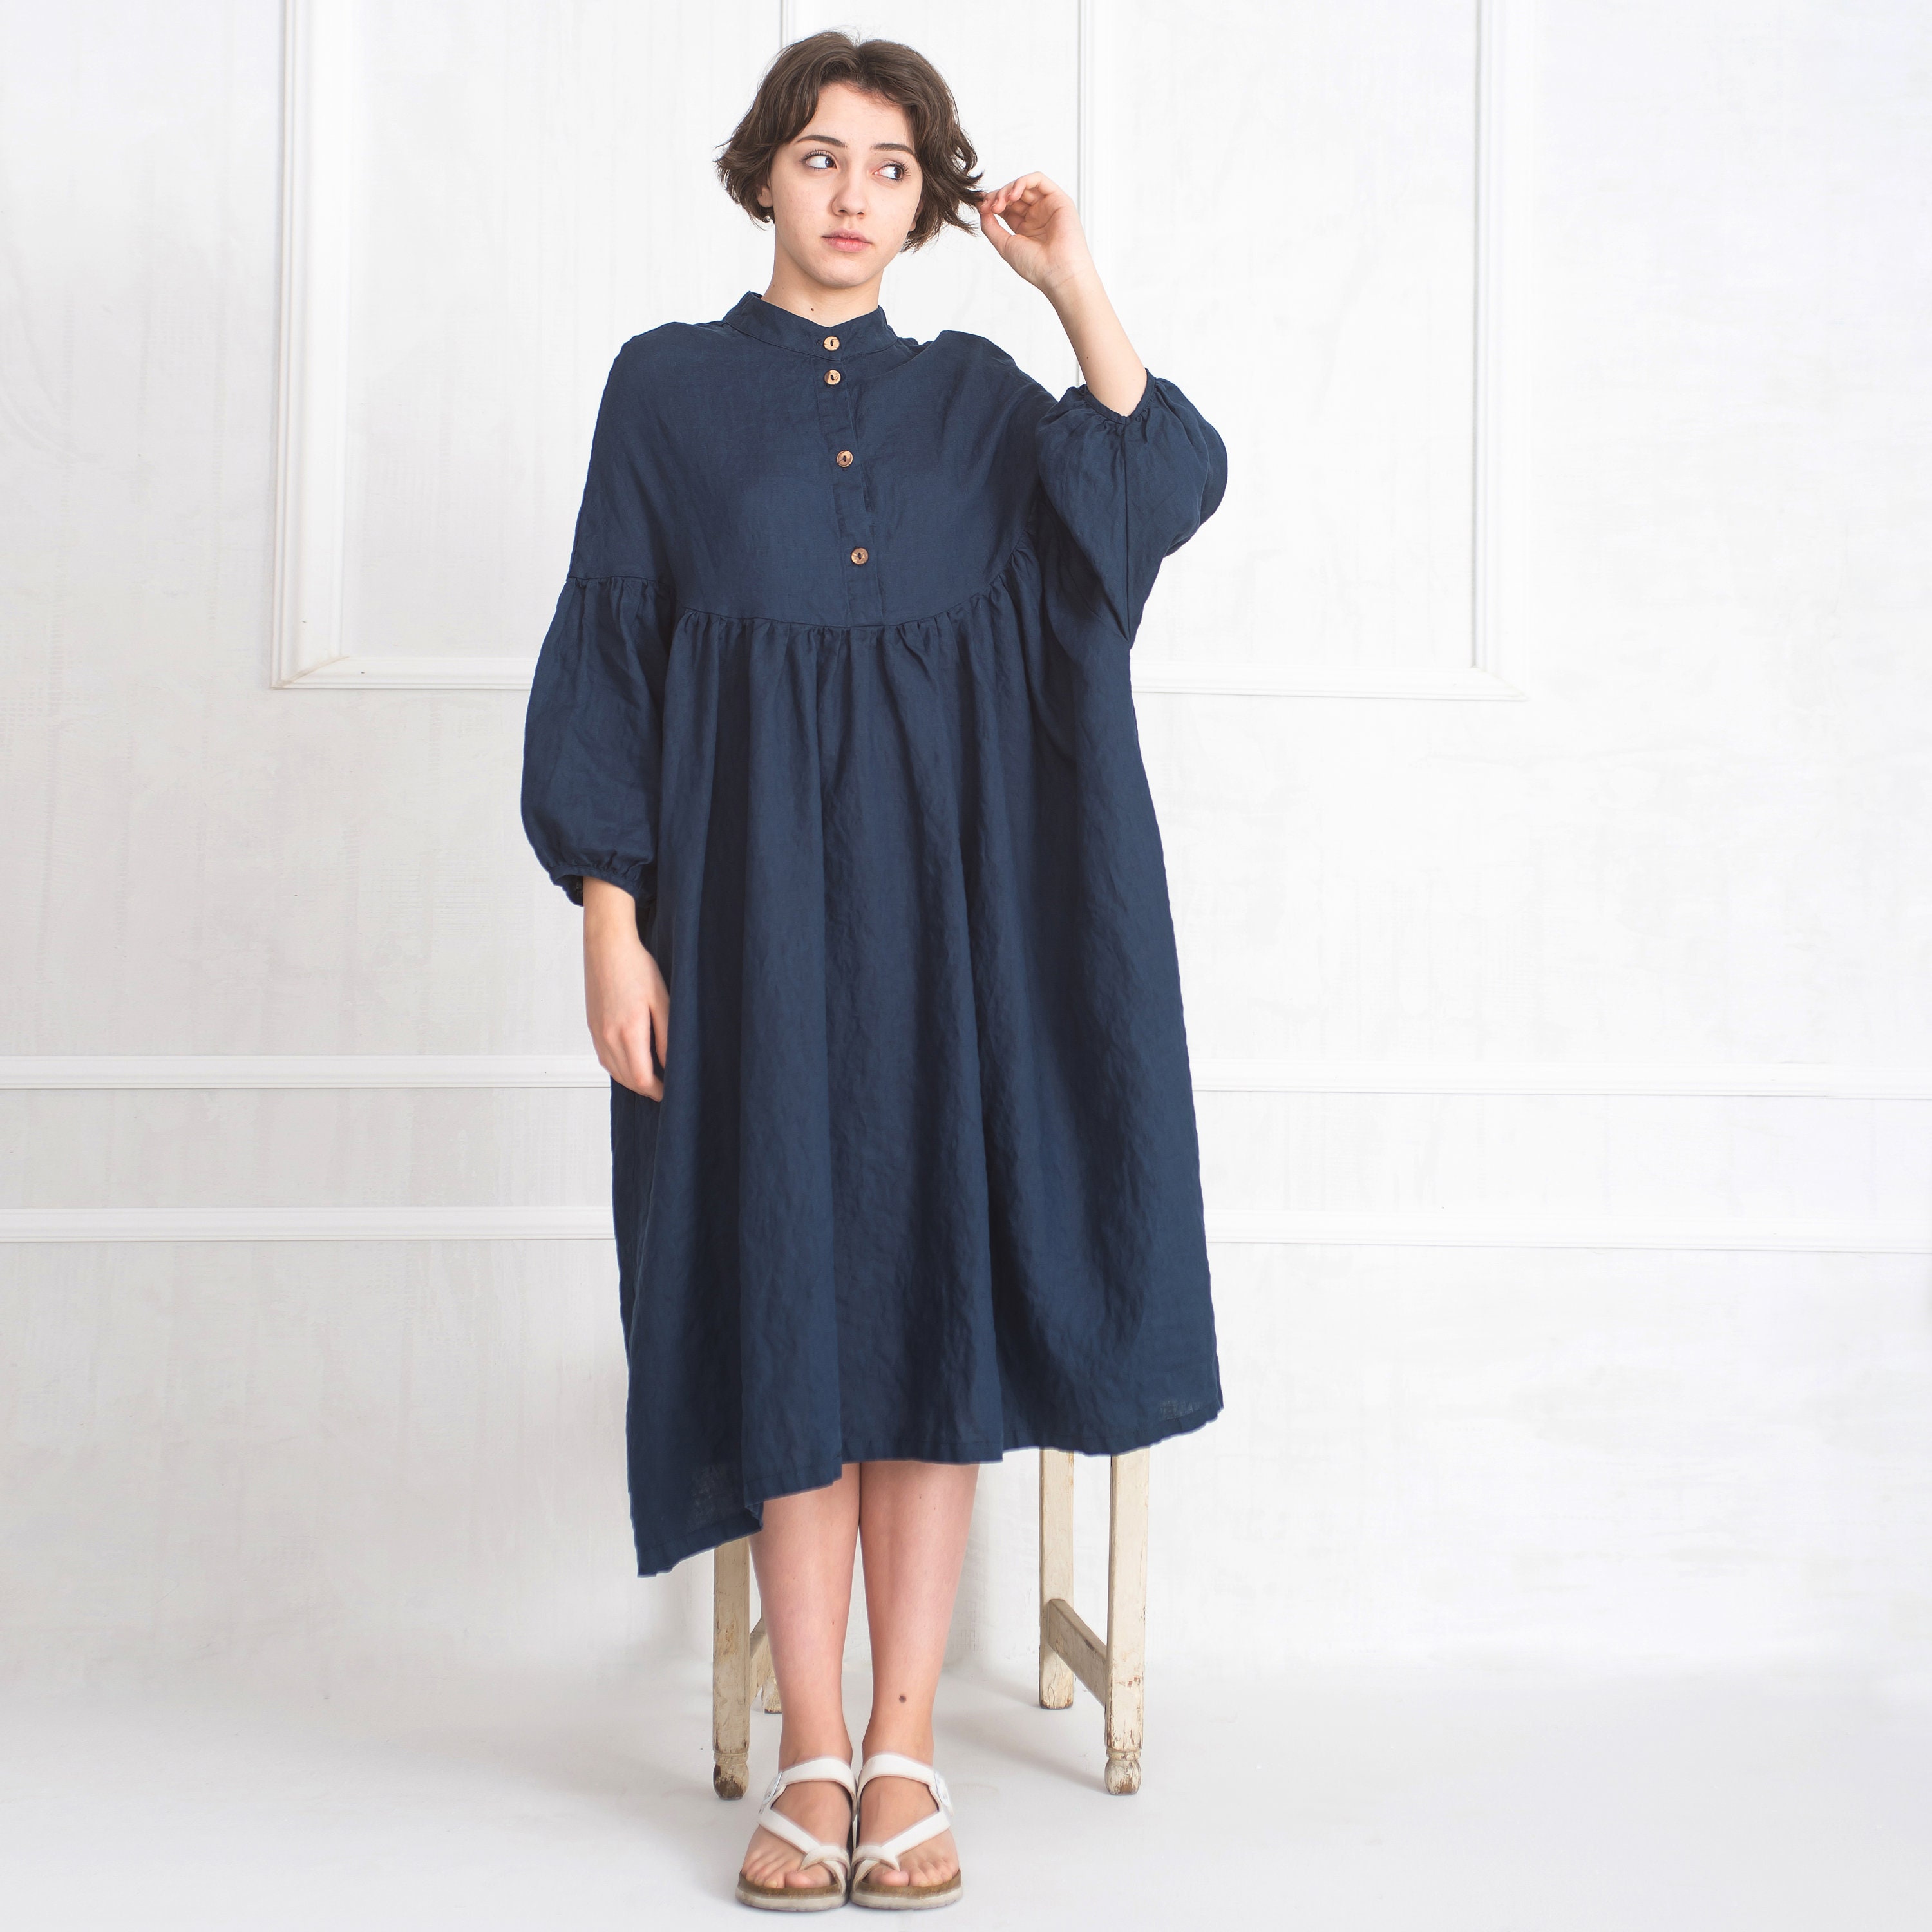 Blue Linen Dress Maxi Linen Dress Medieval Linen Dress | Etsy